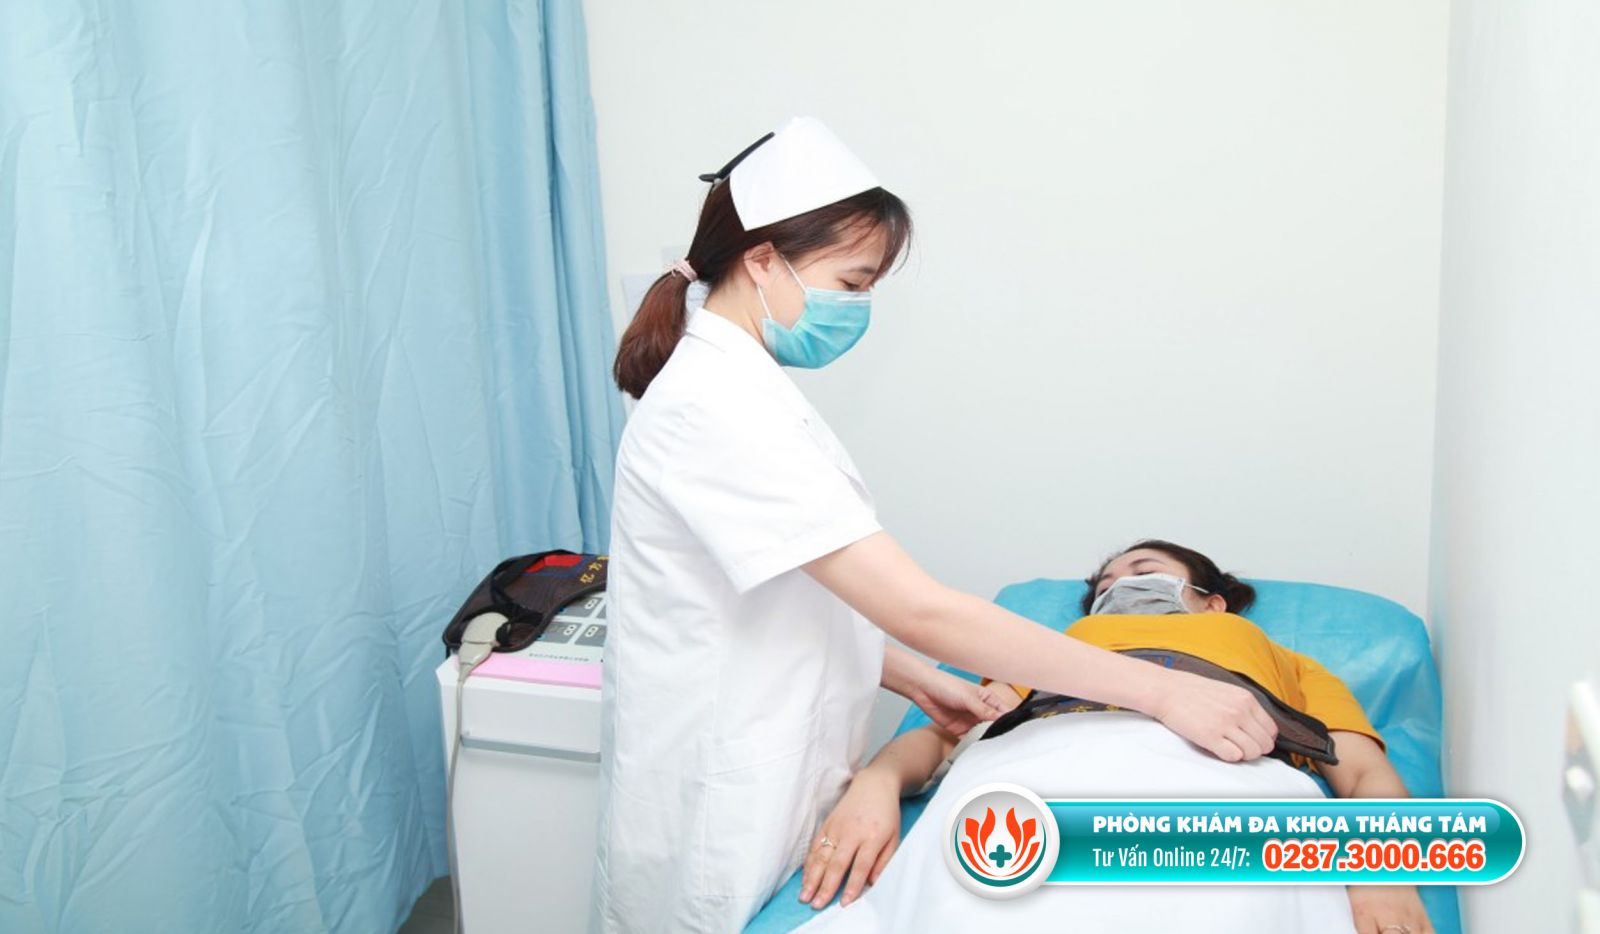 Phòng khám Bs. Nguyễn Ngọc Anh Thư là phòng khám đình chỉ thai uy tín